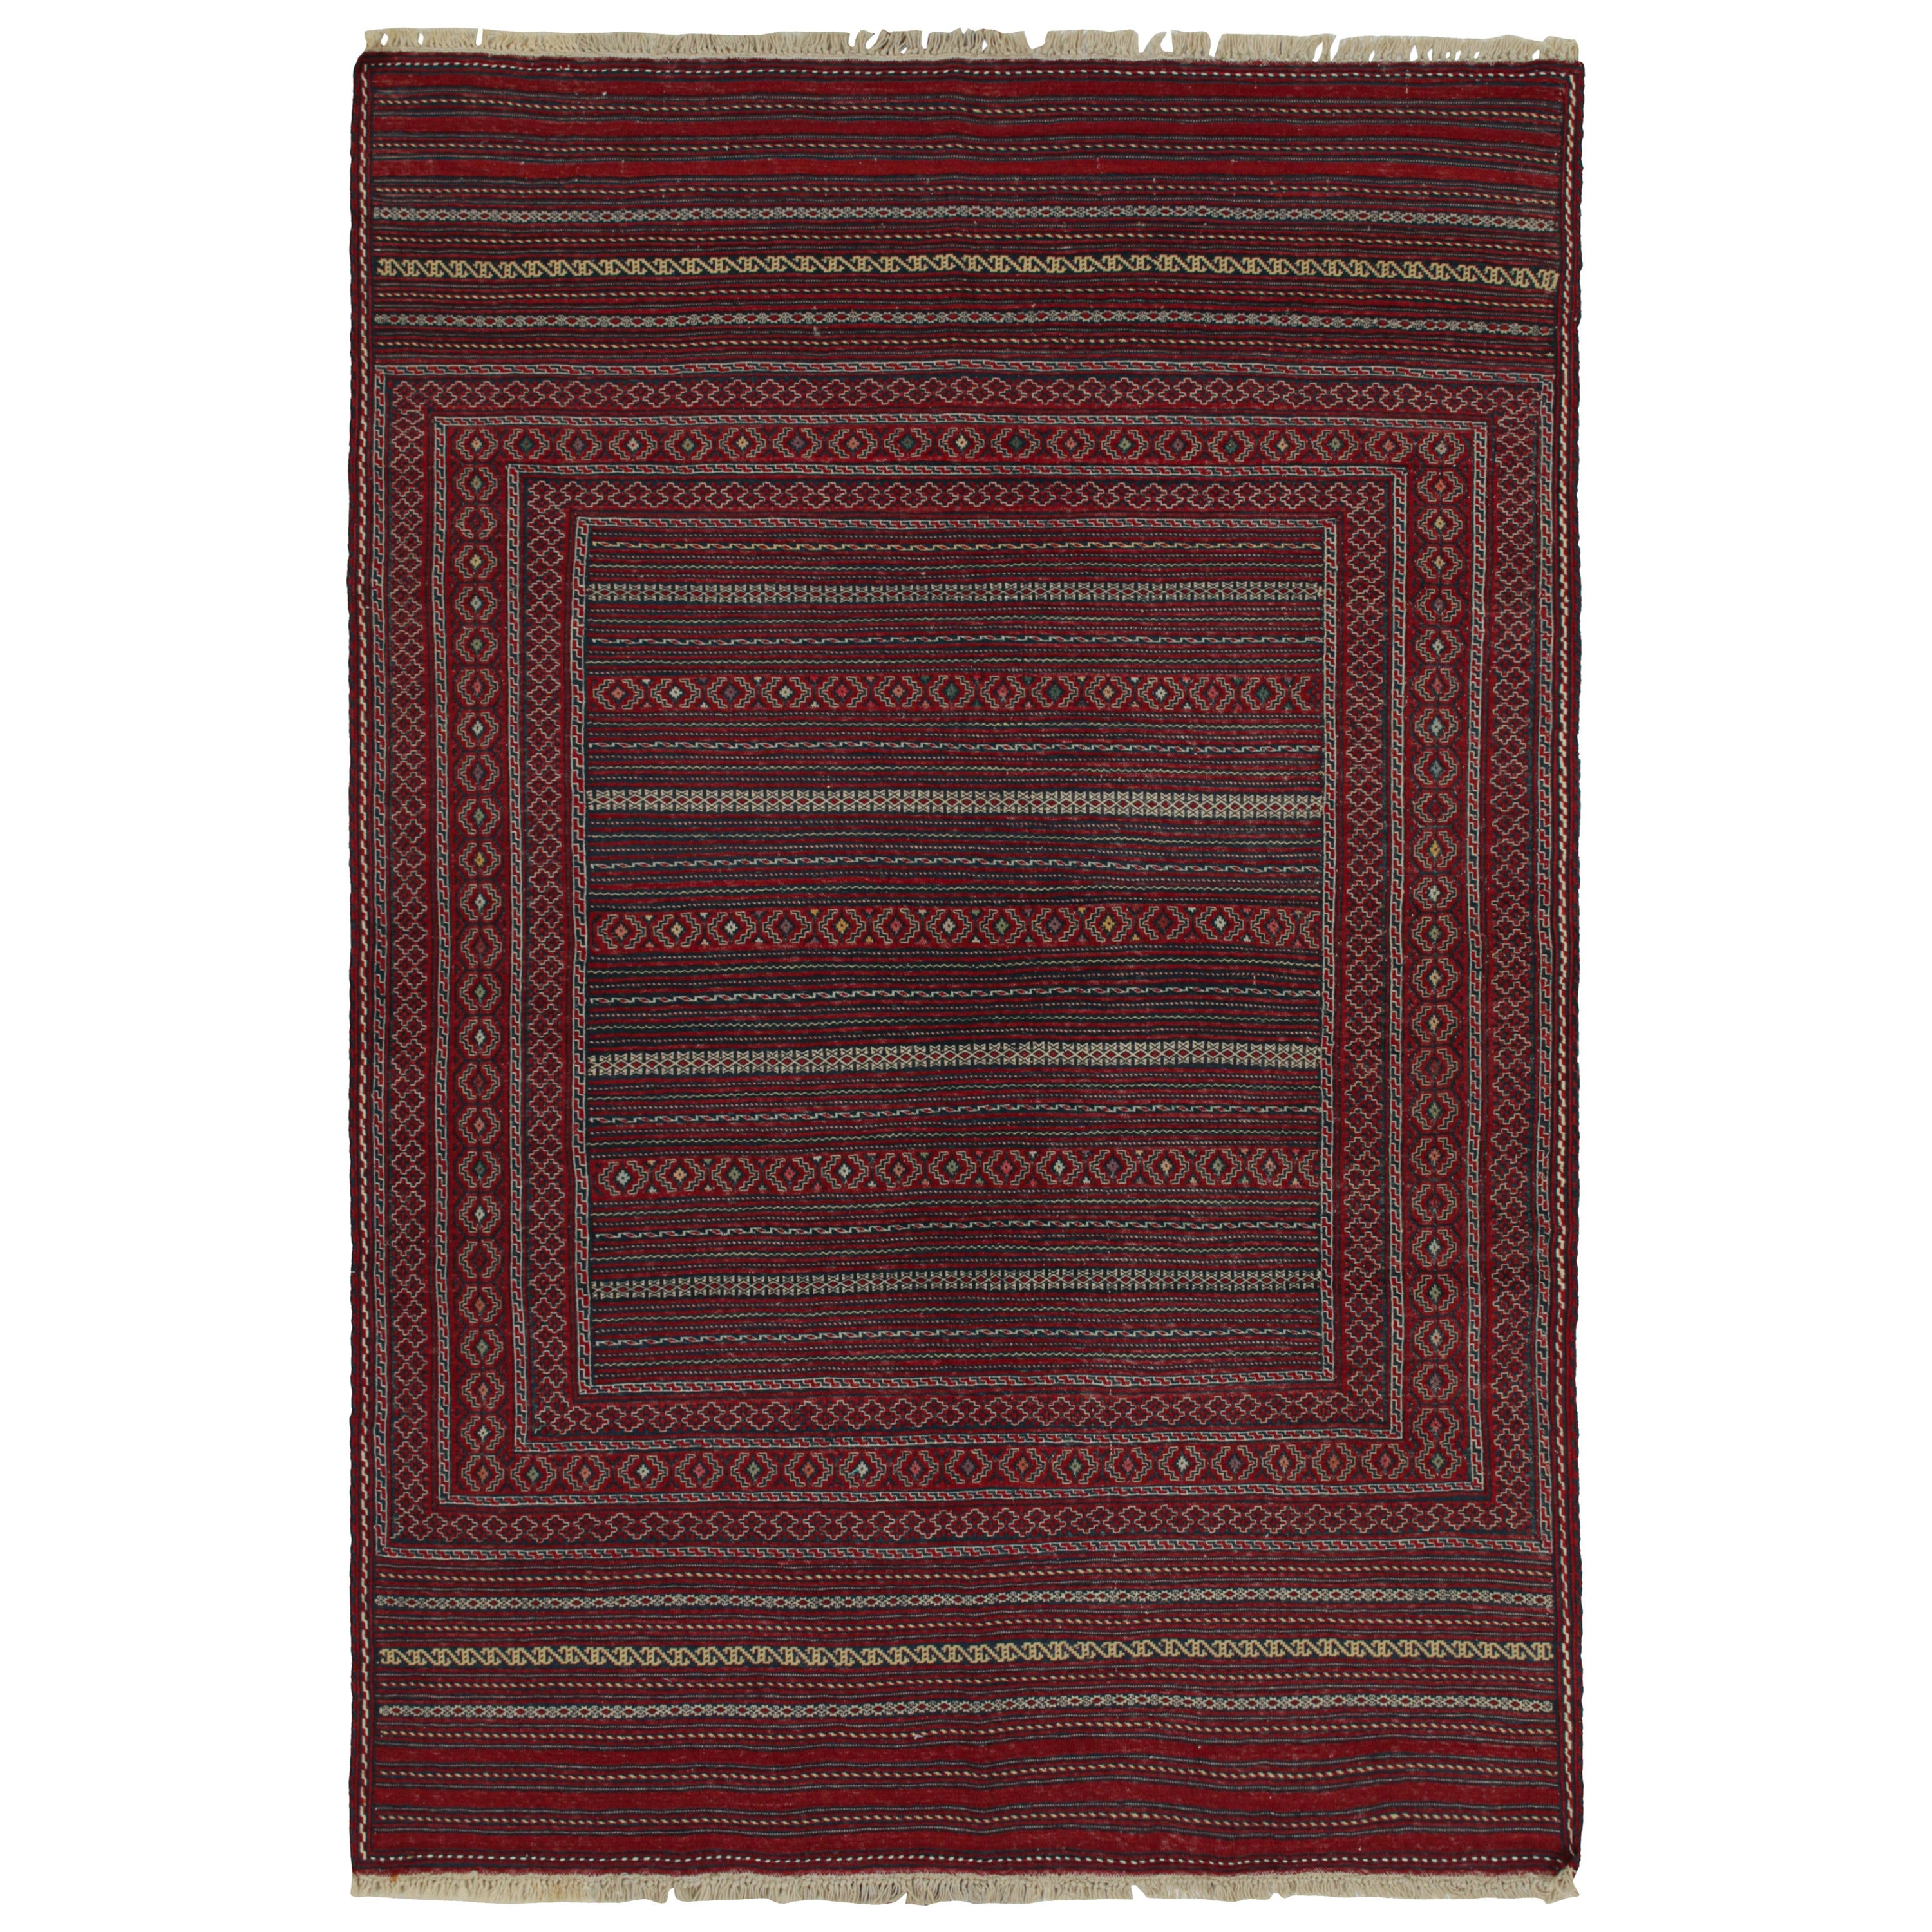 Tapis Kilim tribal Baluch vintage avec motifs géométriques rouges et bleus, de Rug & Kilim